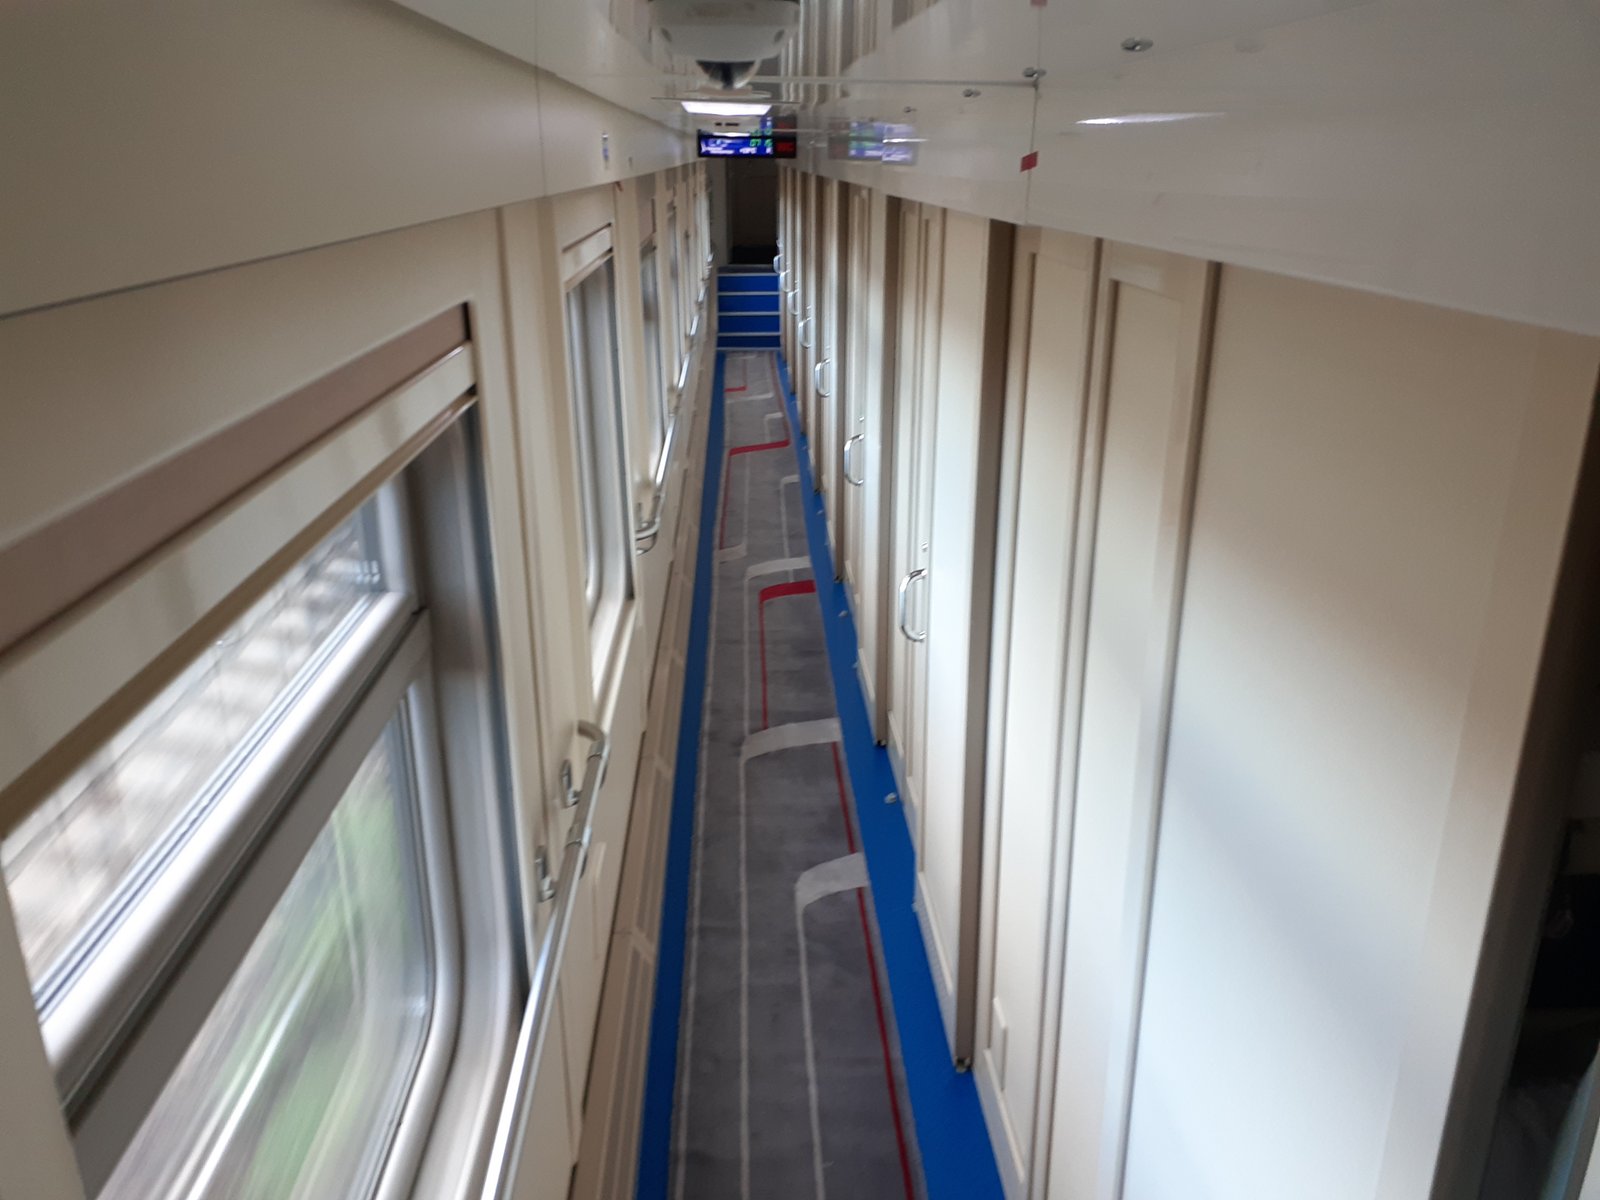 Как выглядит второй этаж двухэтажного поезда фото внутри вагона